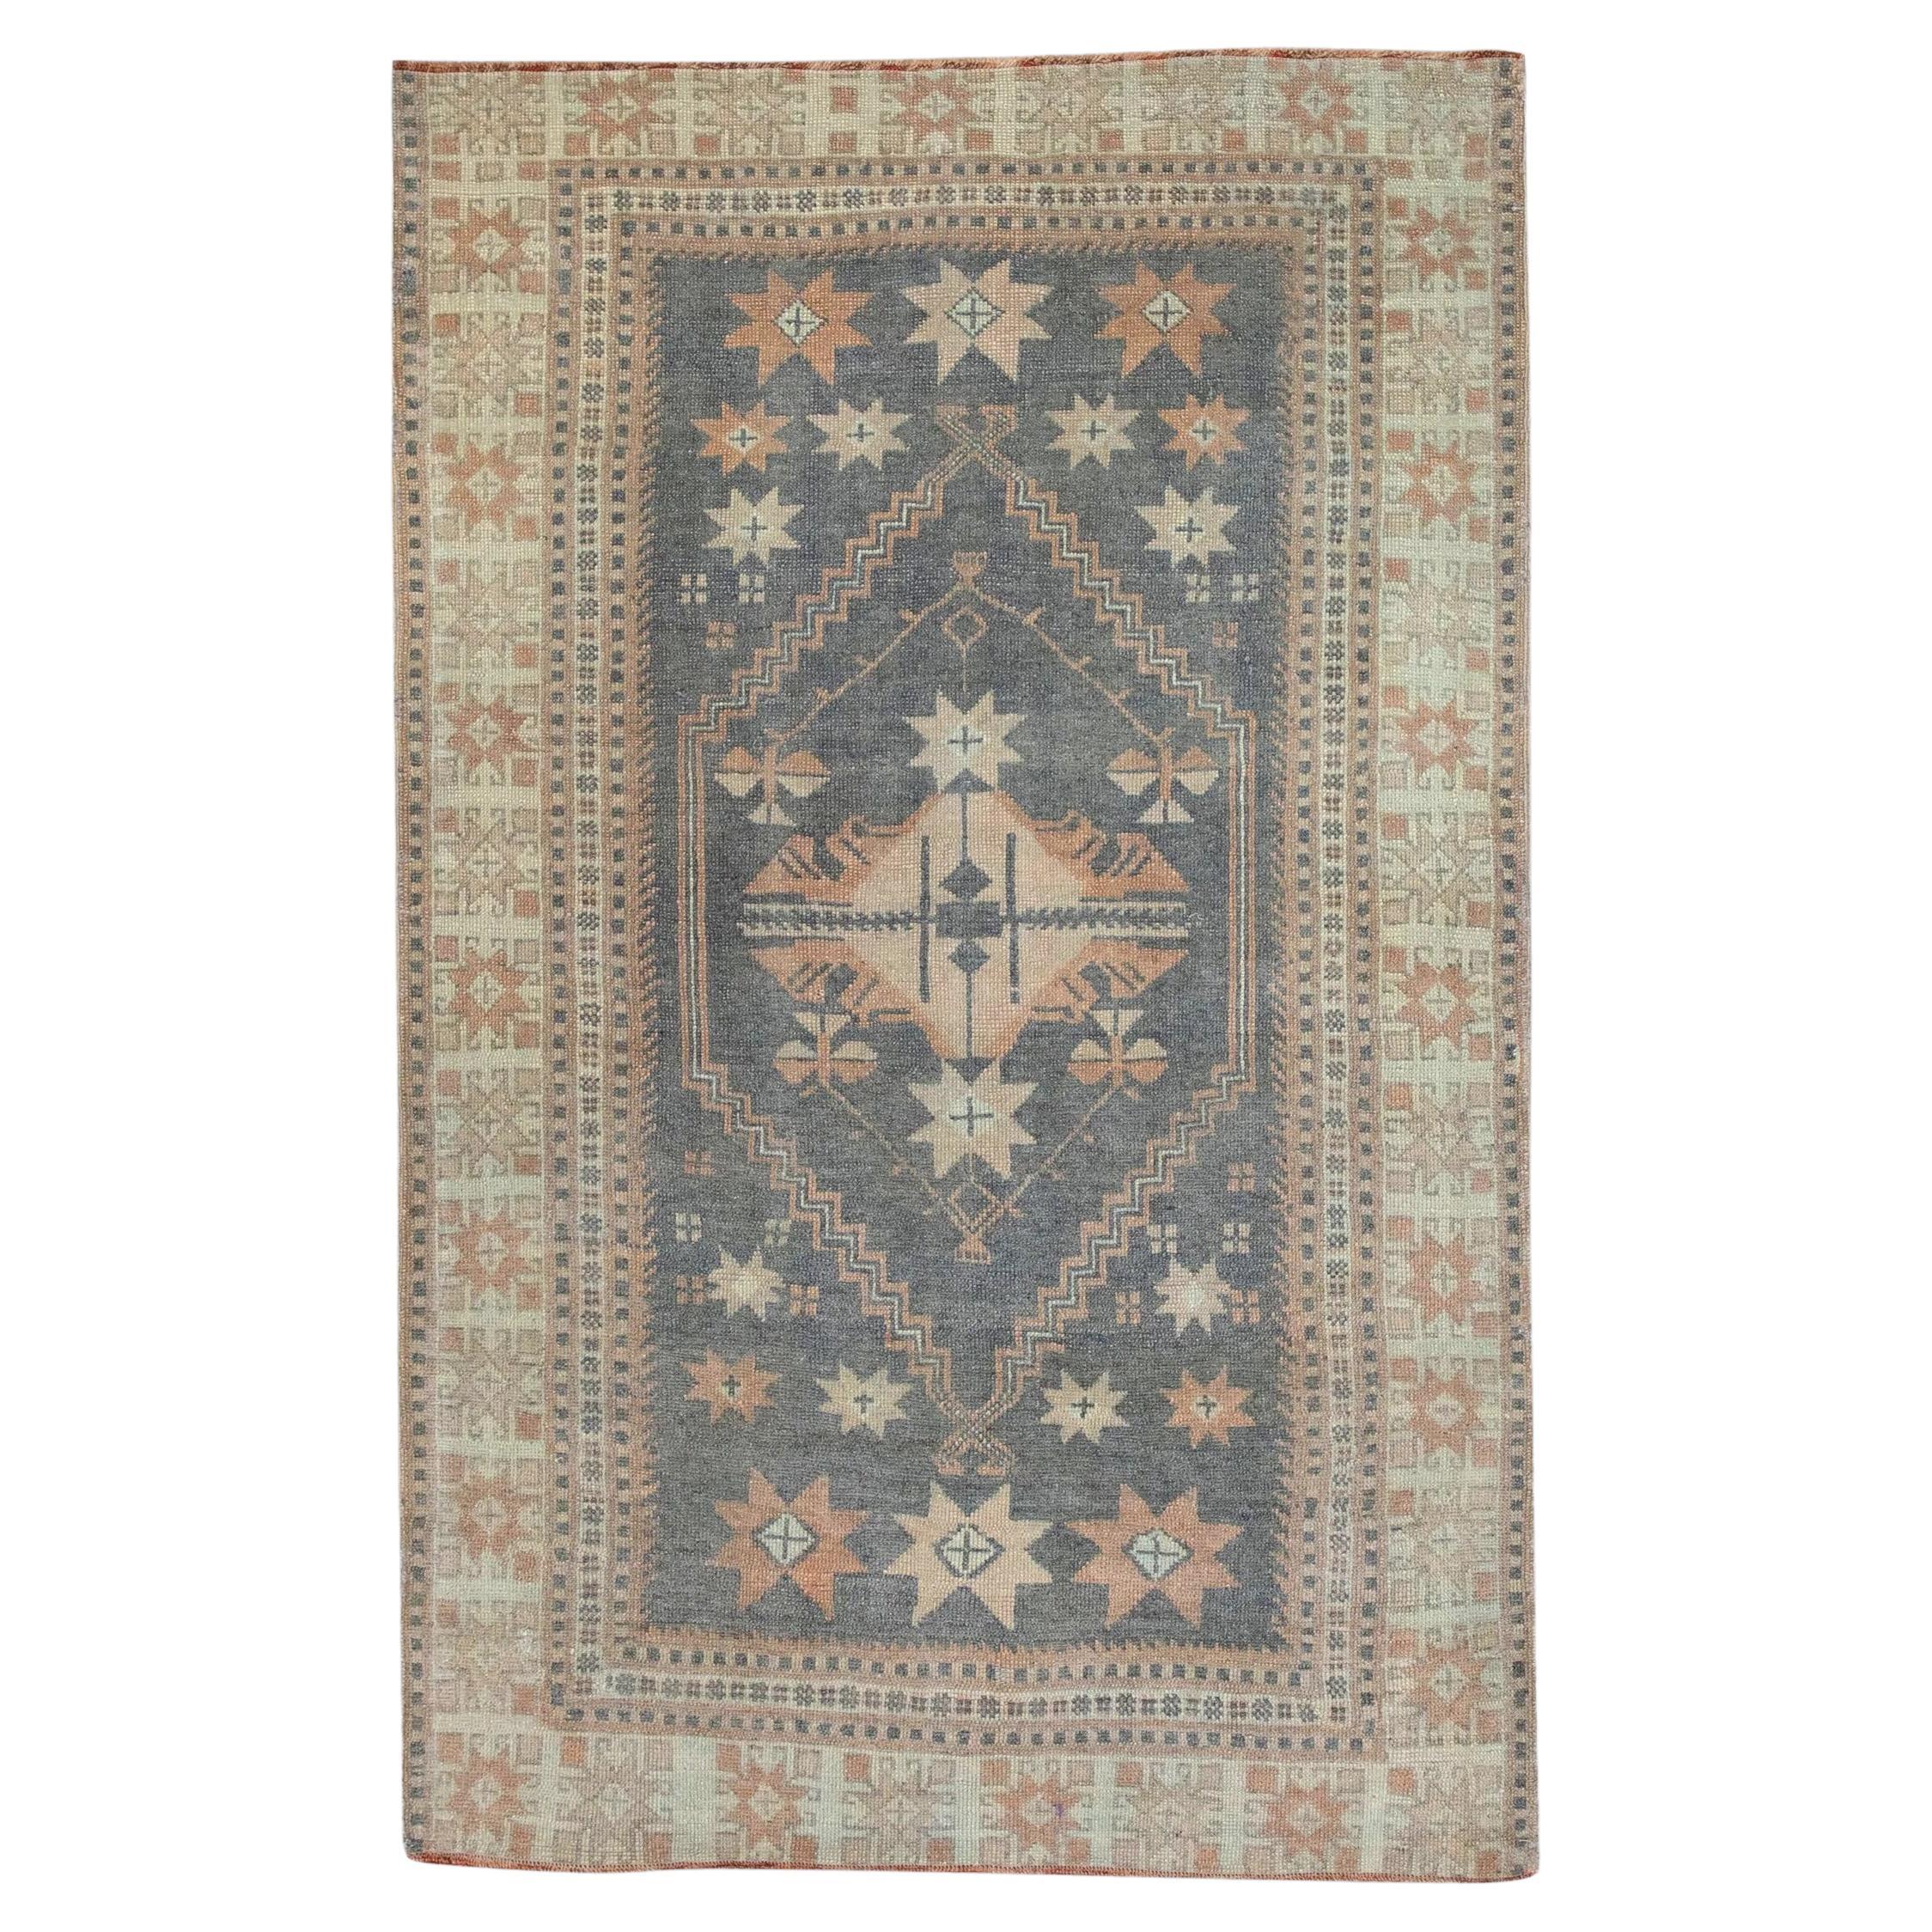 Türkischer Vintage-Teppich in Grau & Lachs, 3'7" x 5'10"